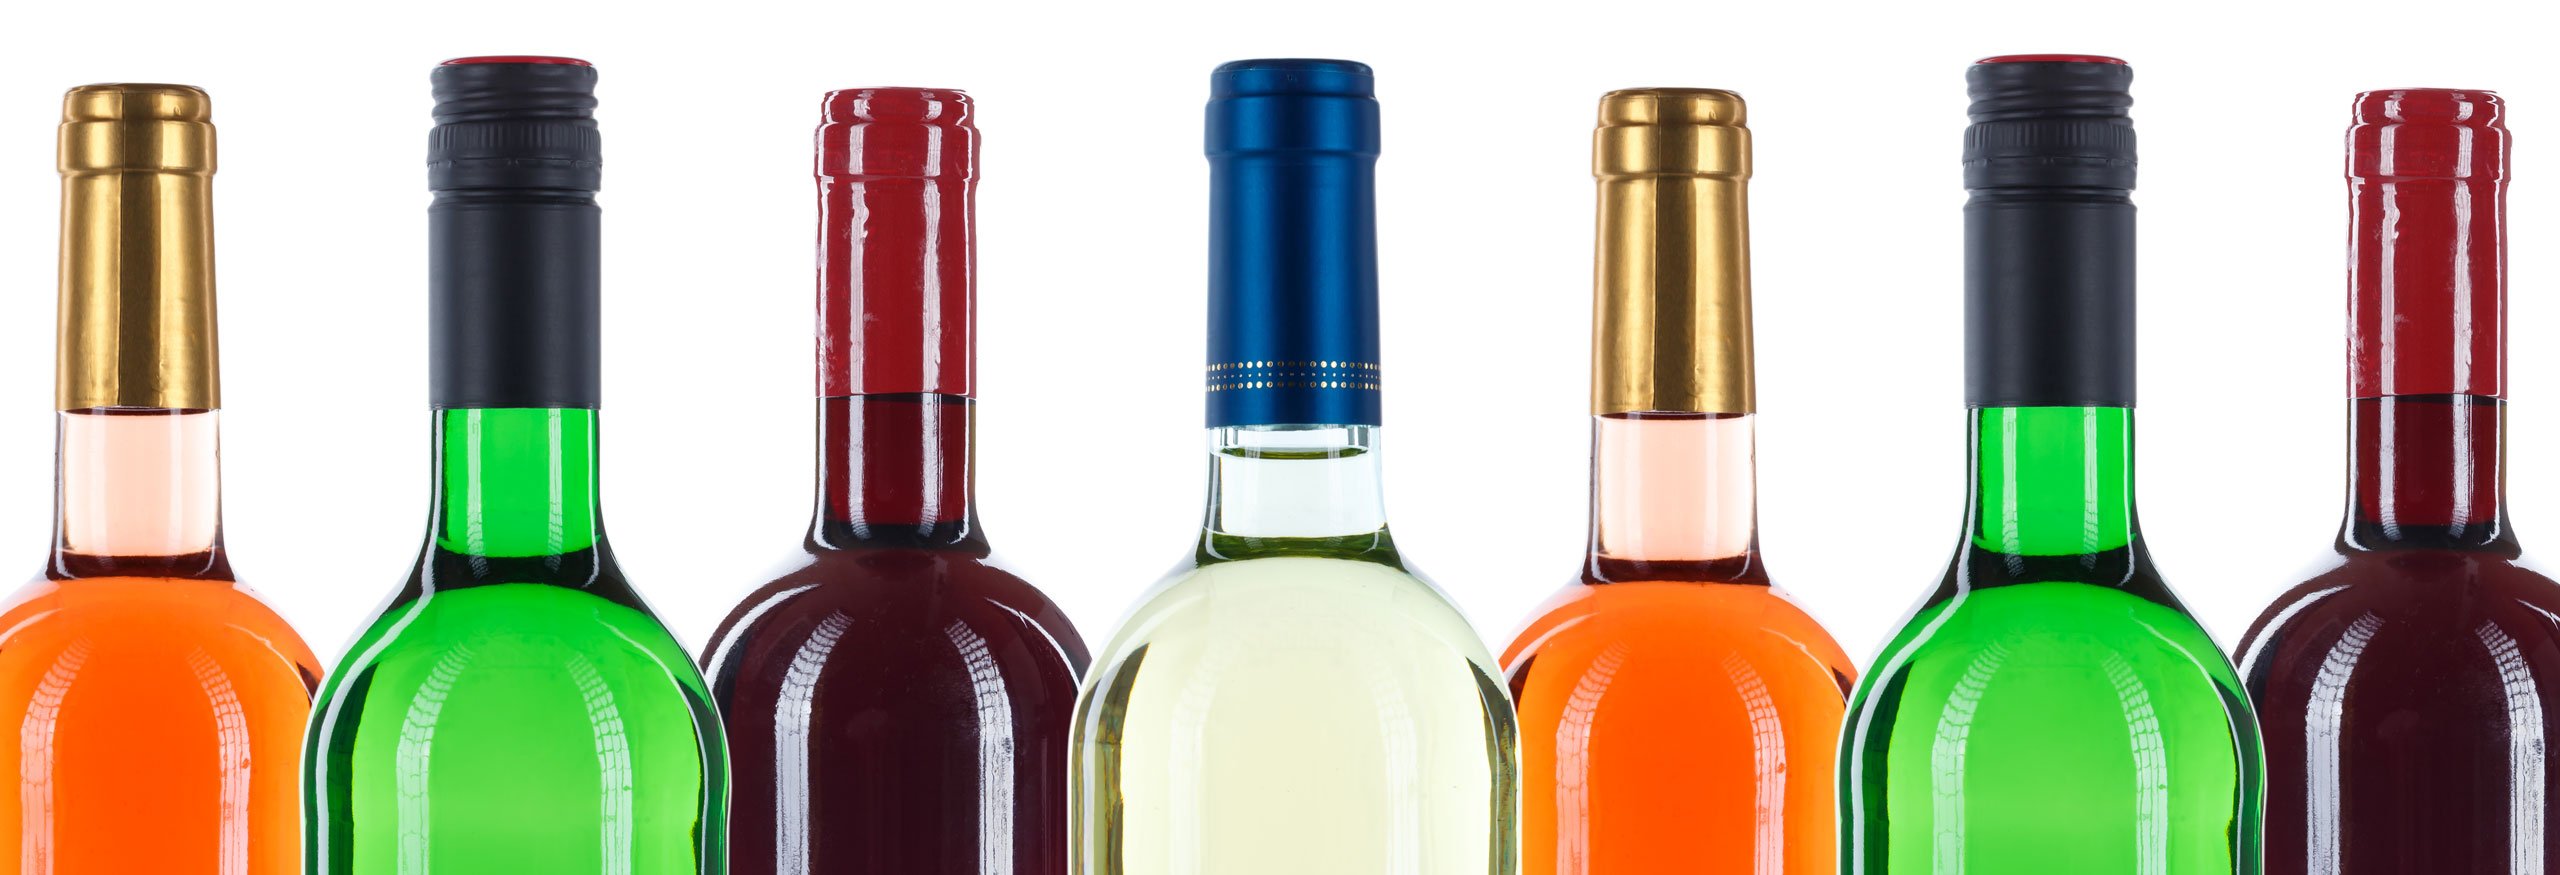 Auswahl verschiedener Flaschen in unterschiedlichen Farben